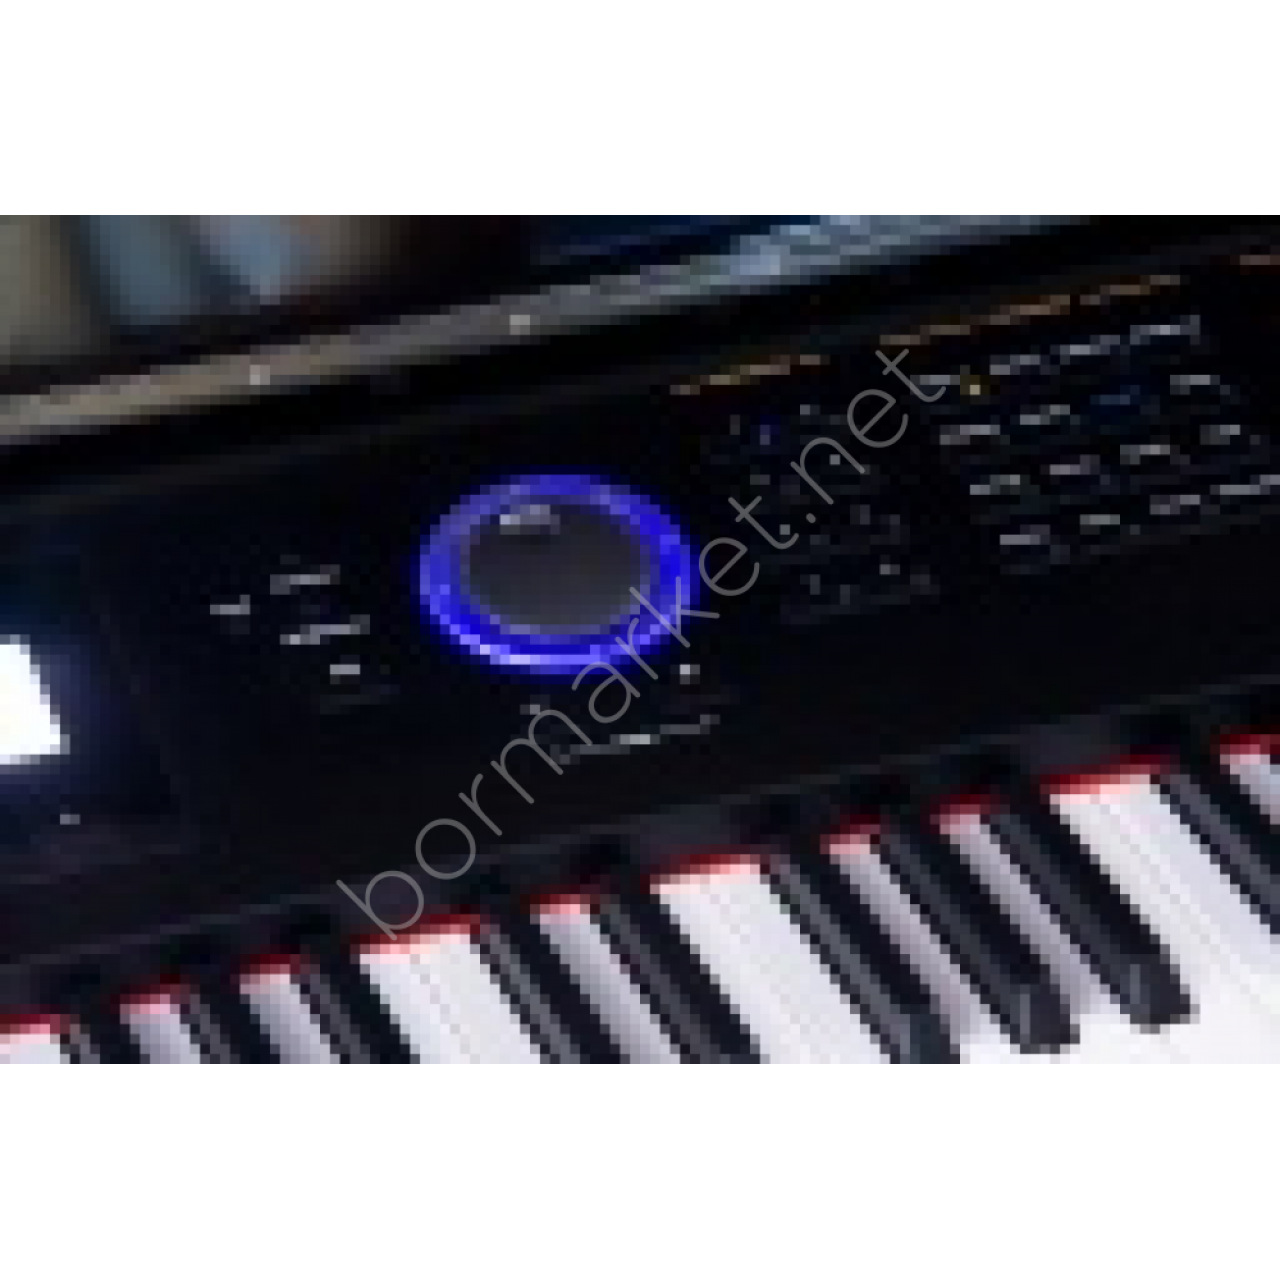 KURZWEIL X-PRO-UP Dijital Piyano&Synthesizer